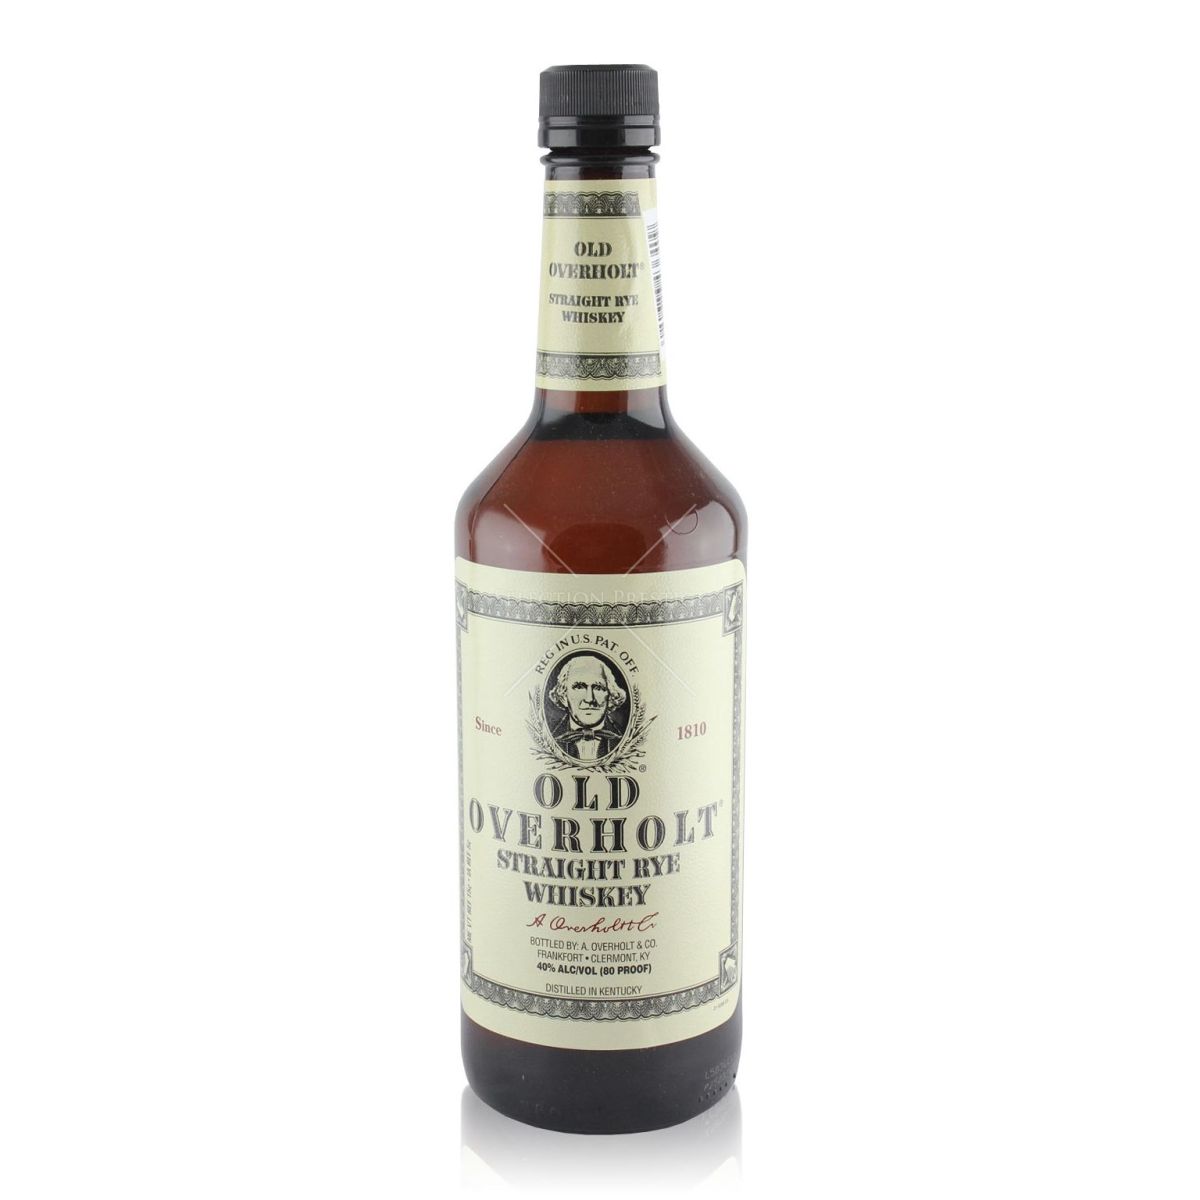 In Praise of Well Liquor #2 Old Overholt Rye